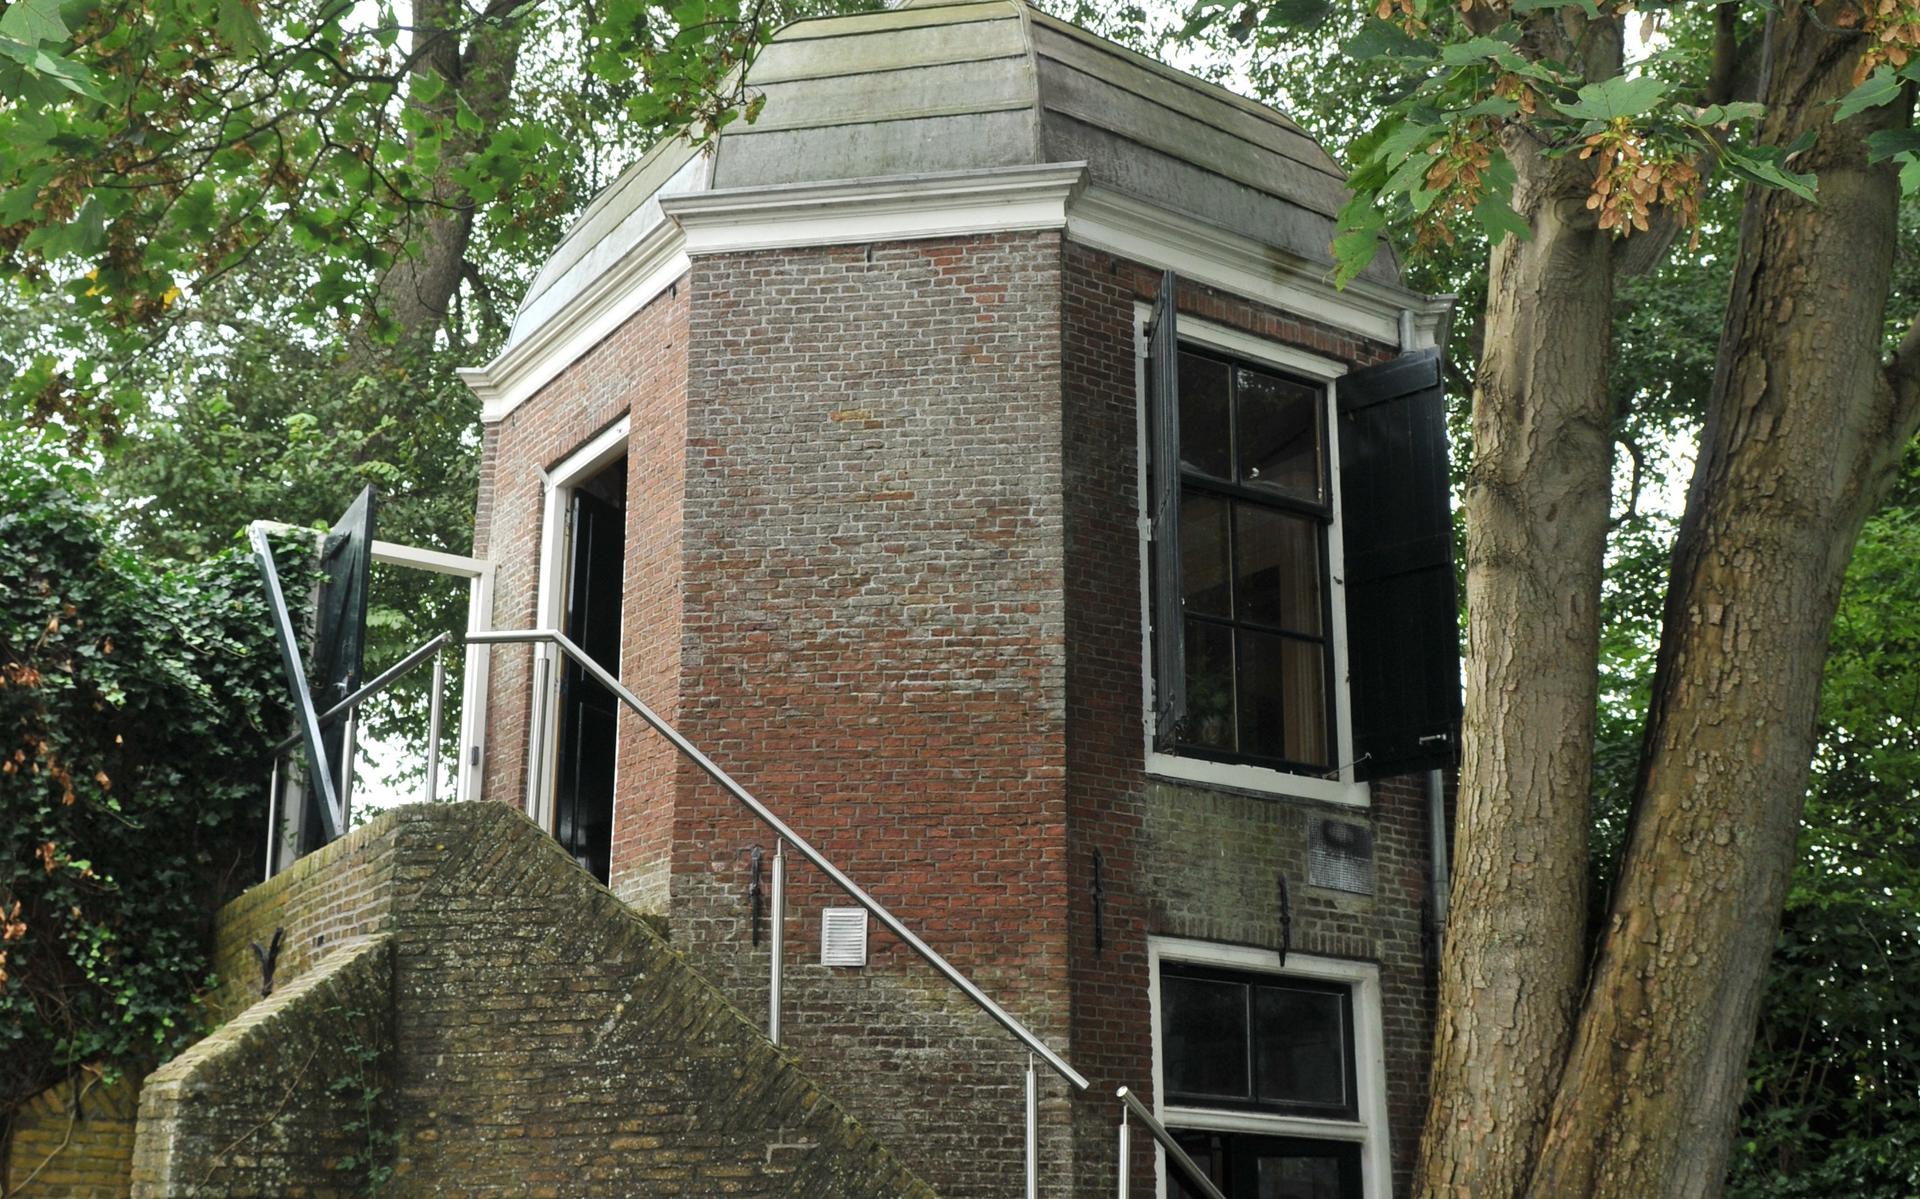 Het theehuisje in Franeker kreeg in 2022 subsidie voor de restauratie van het dak.